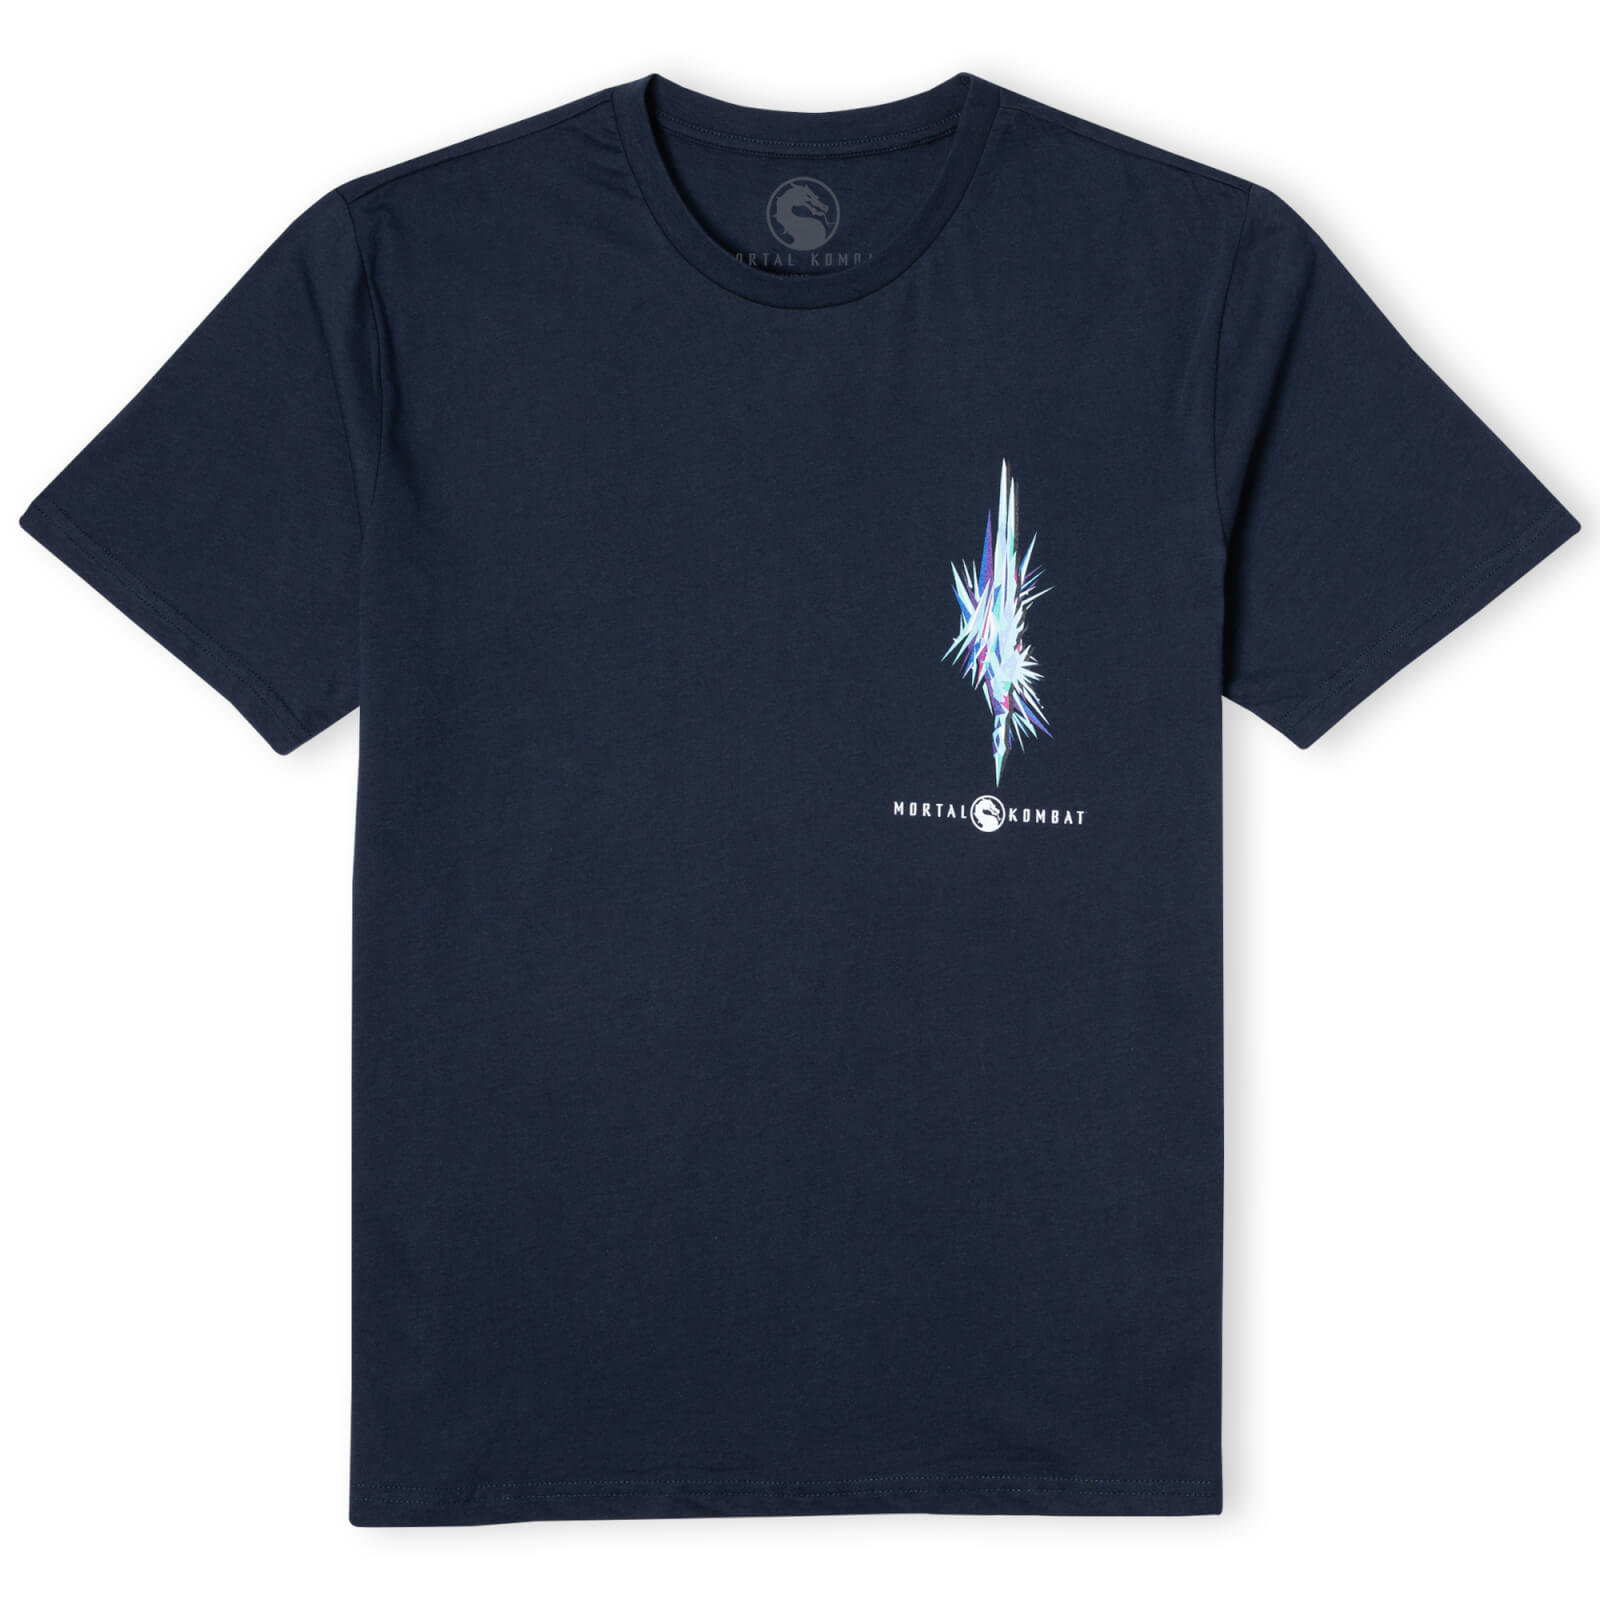 Mortal Kombat Sub-Zero Unisex T-Shirt - Navy - S - Marineblau